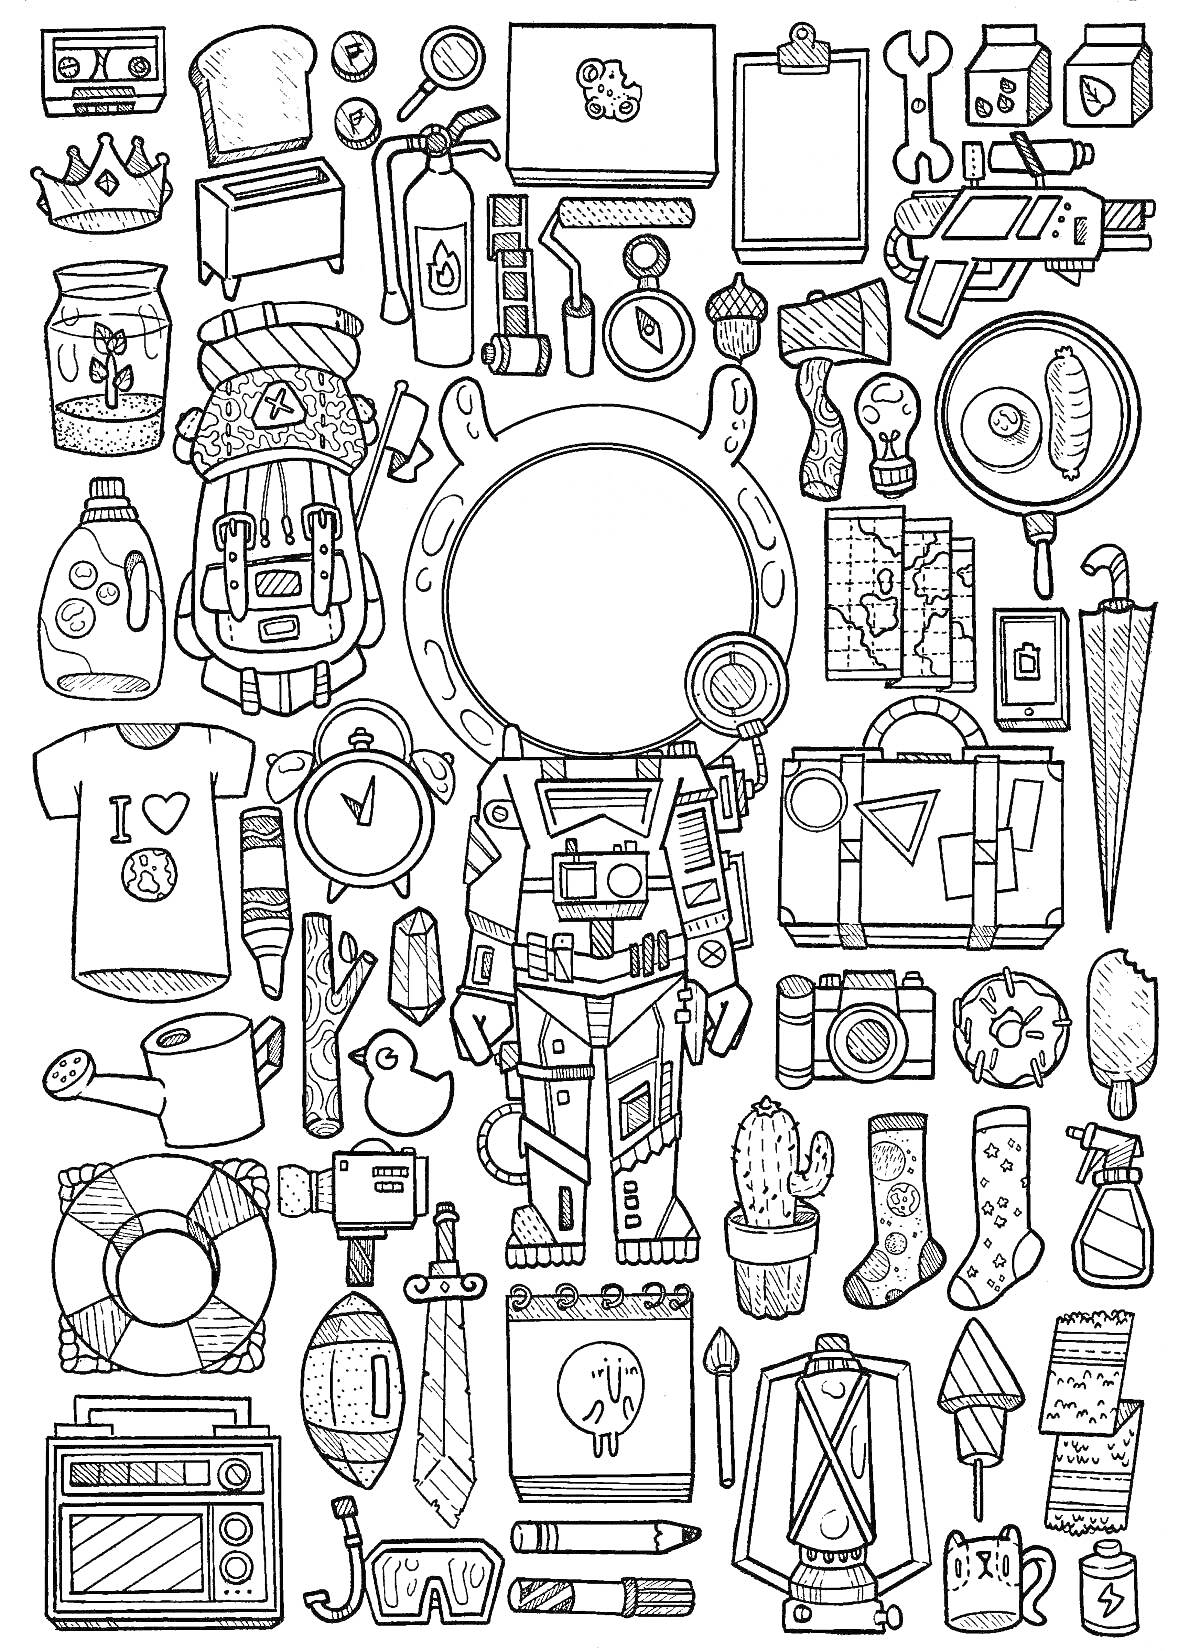 Набор объектов: космонавт, рюкзак, часы, инструменты, лампочка, портфель, зонт, фотоаппарат, чайник, кактус, носки, вентилятор и другие предметы